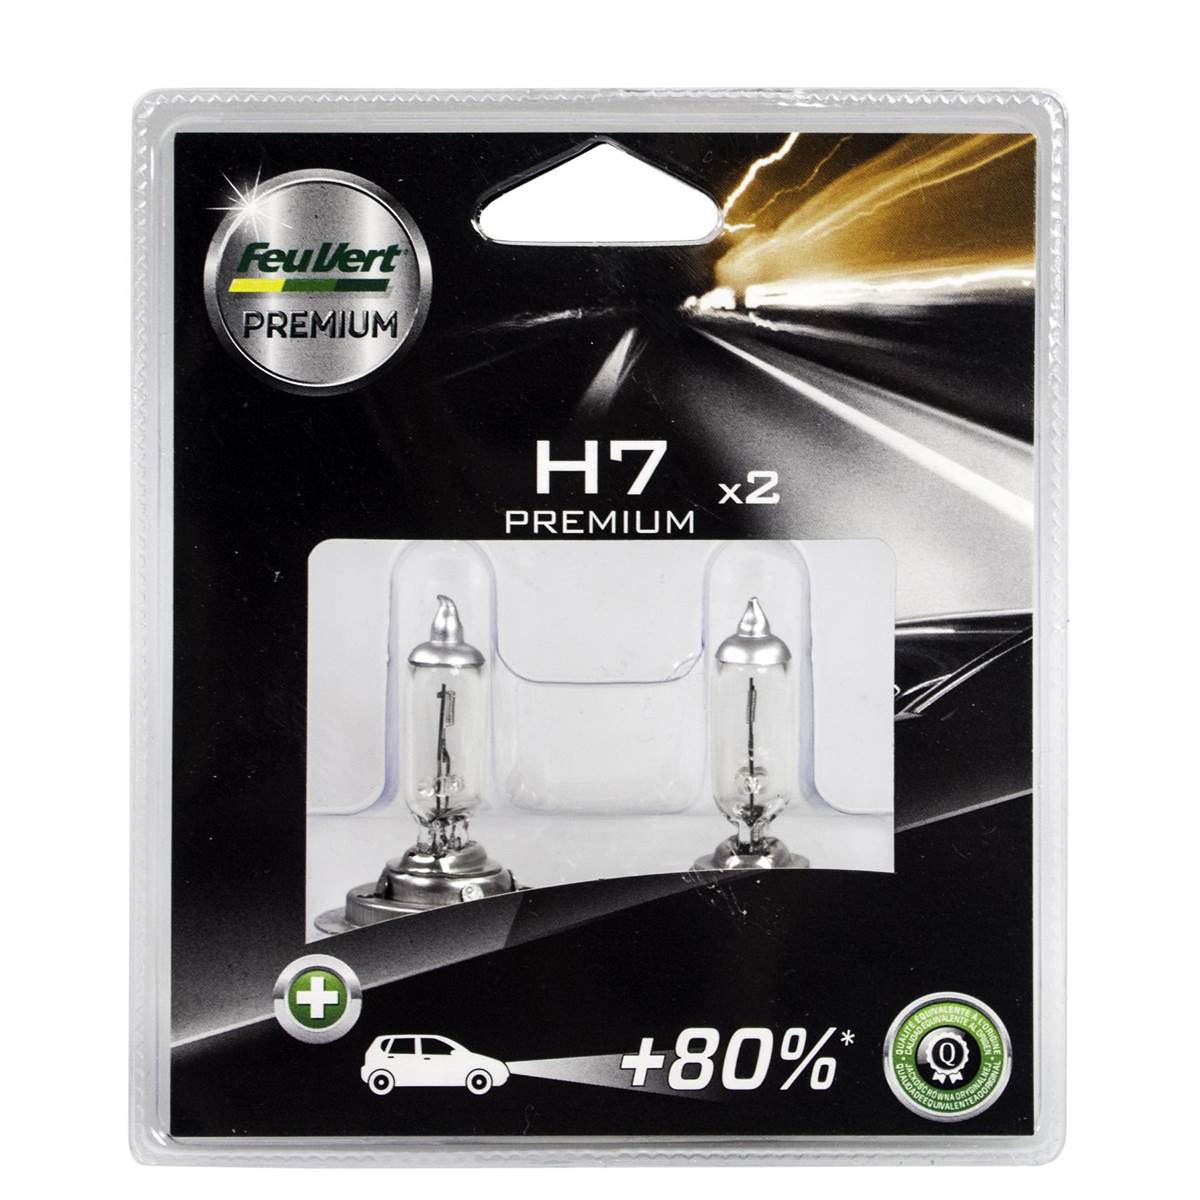 Ampoules (2 pièces) Feu Vert Premium Effet Xenon H7